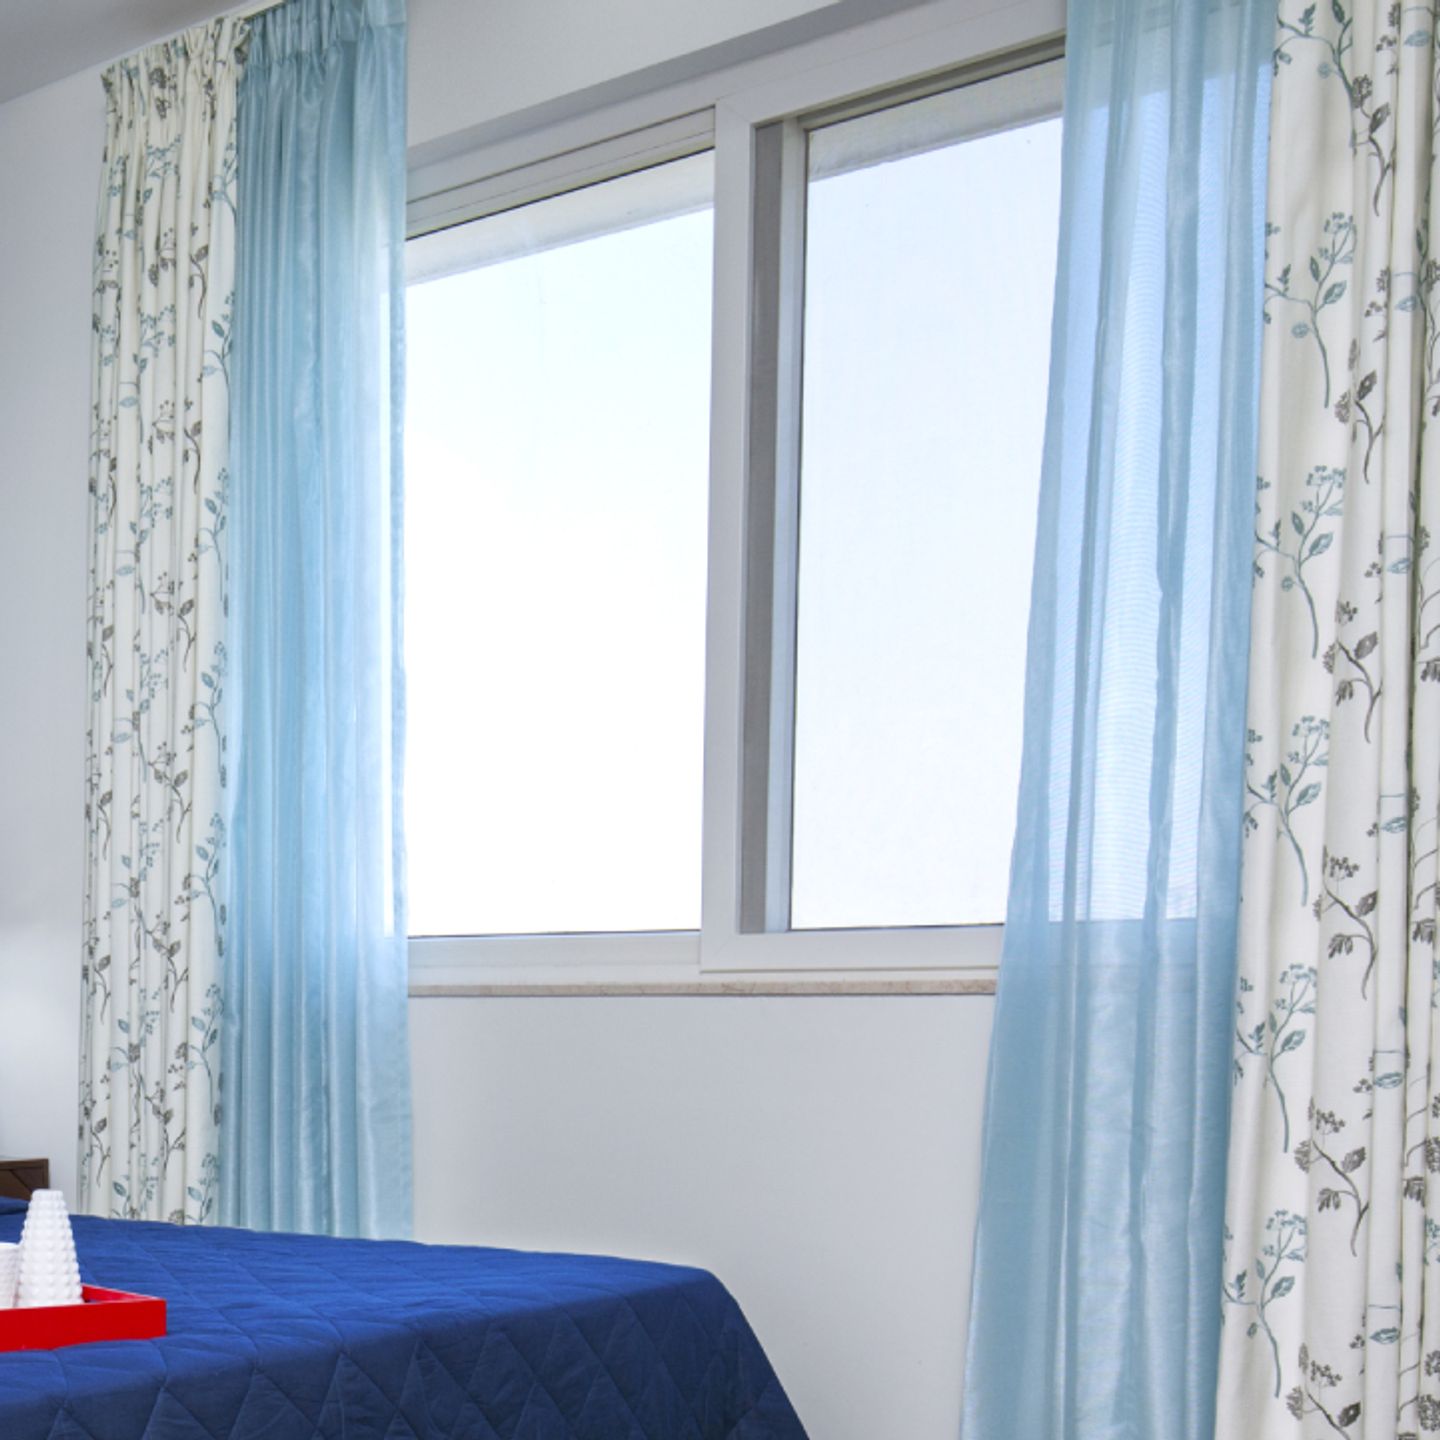 White Sliding Window Design For Bedrooms - Livspace